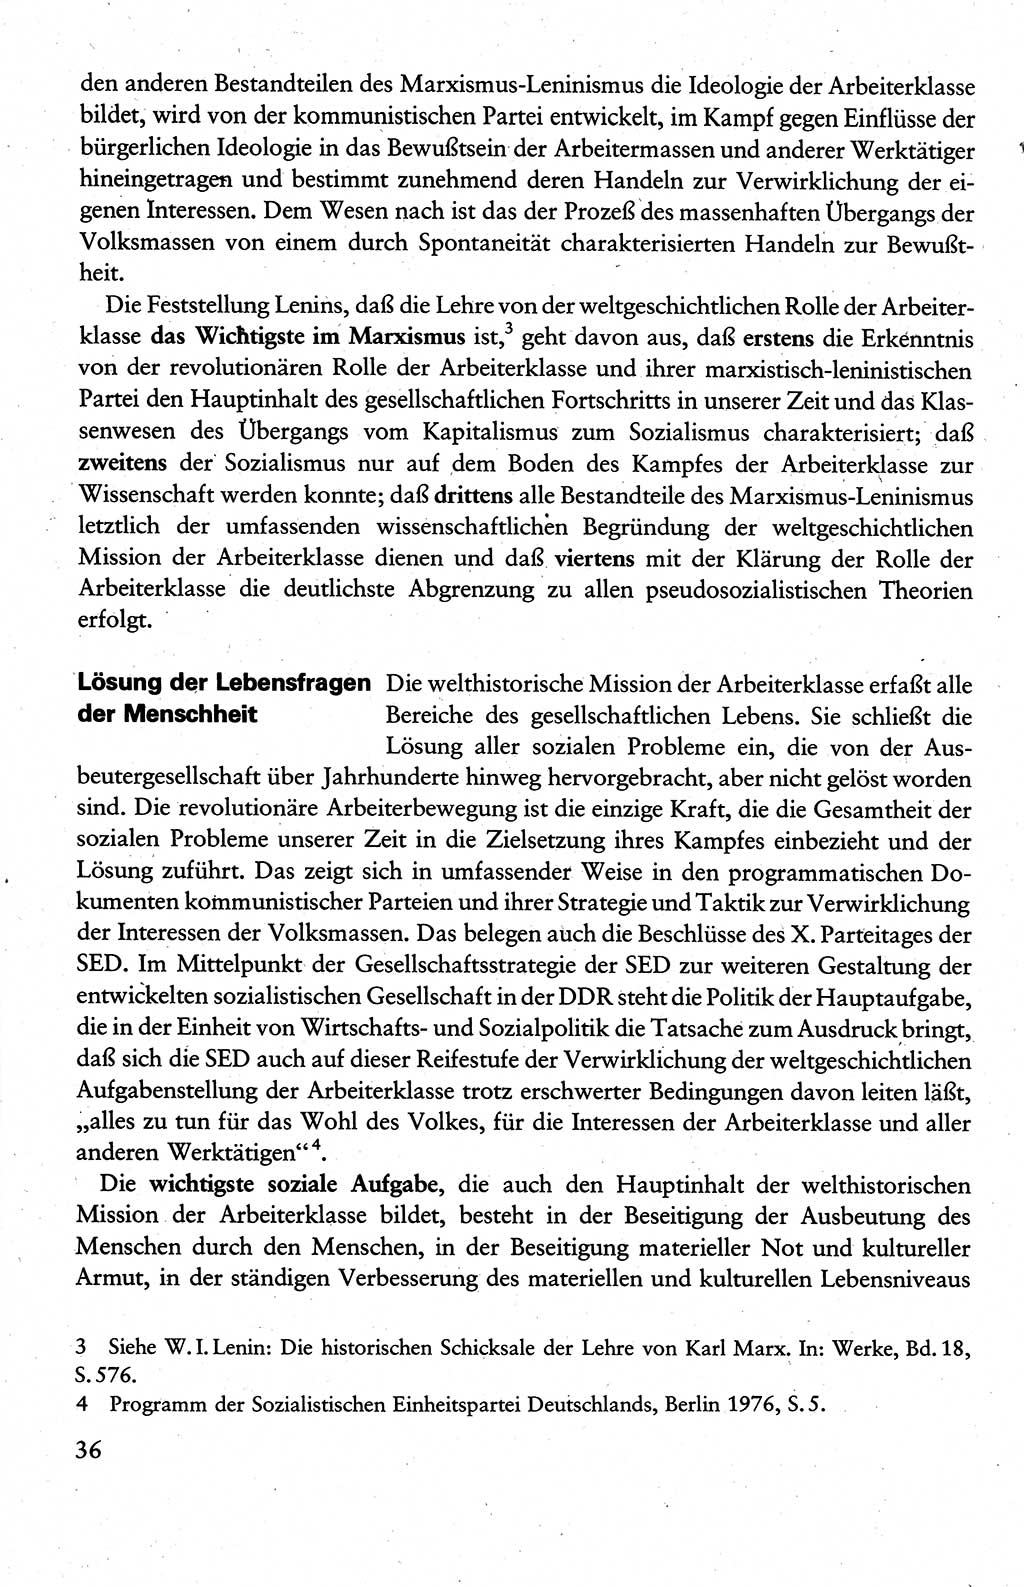 Wissenschaftlicher Kommunismus [Deutsche Demokratische Republik (DDR)], Lehrbuch für das marxistisch-leninistische Grundlagenstudium 1983, Seite 36 (Wiss. Komm. DDR Lb. 1983, S. 36)